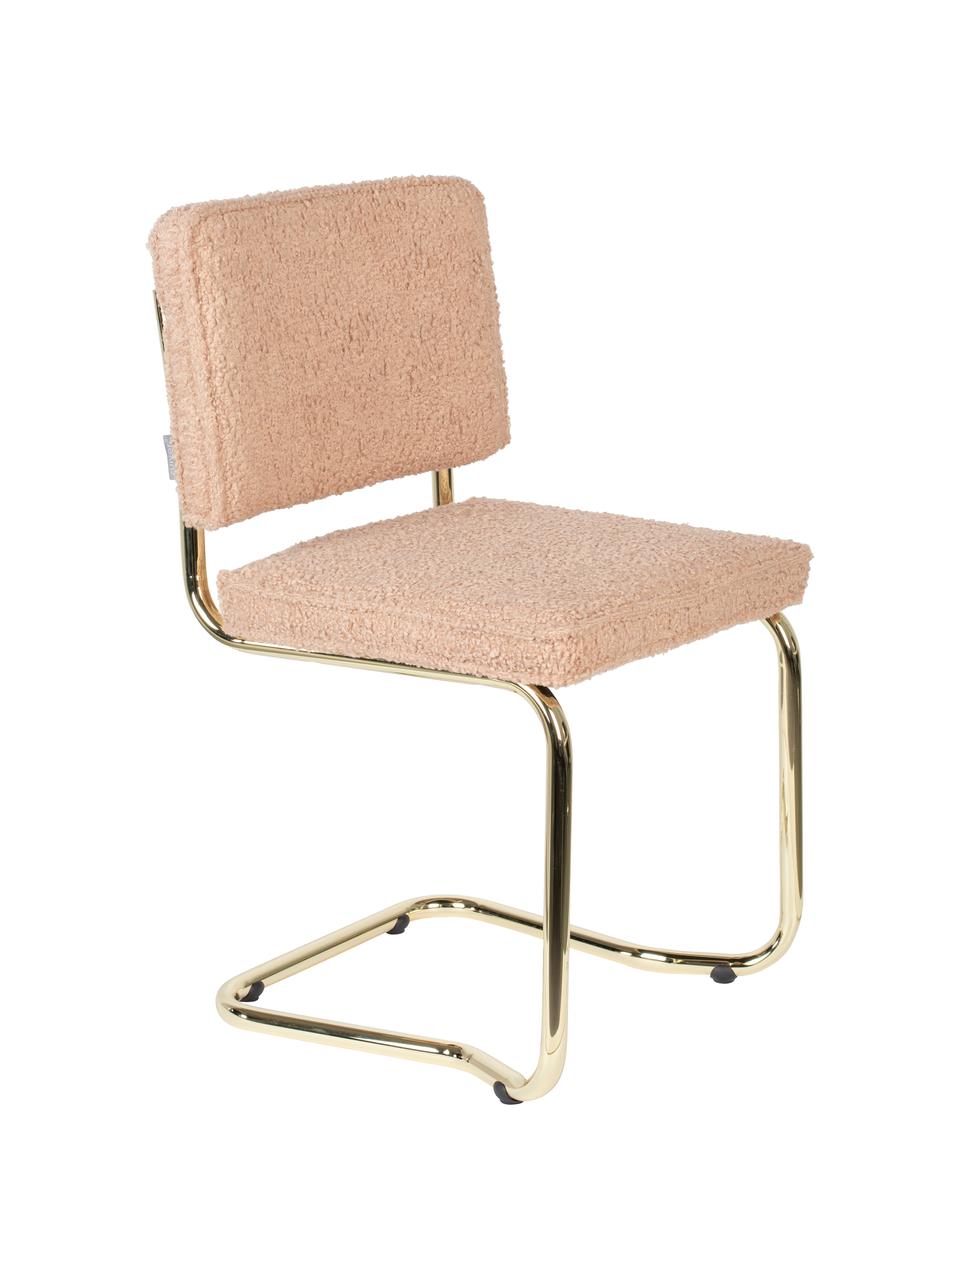 Houpací židle Teddy Kink, Růžová, mosazná, Š 48 cm, H 48 cm